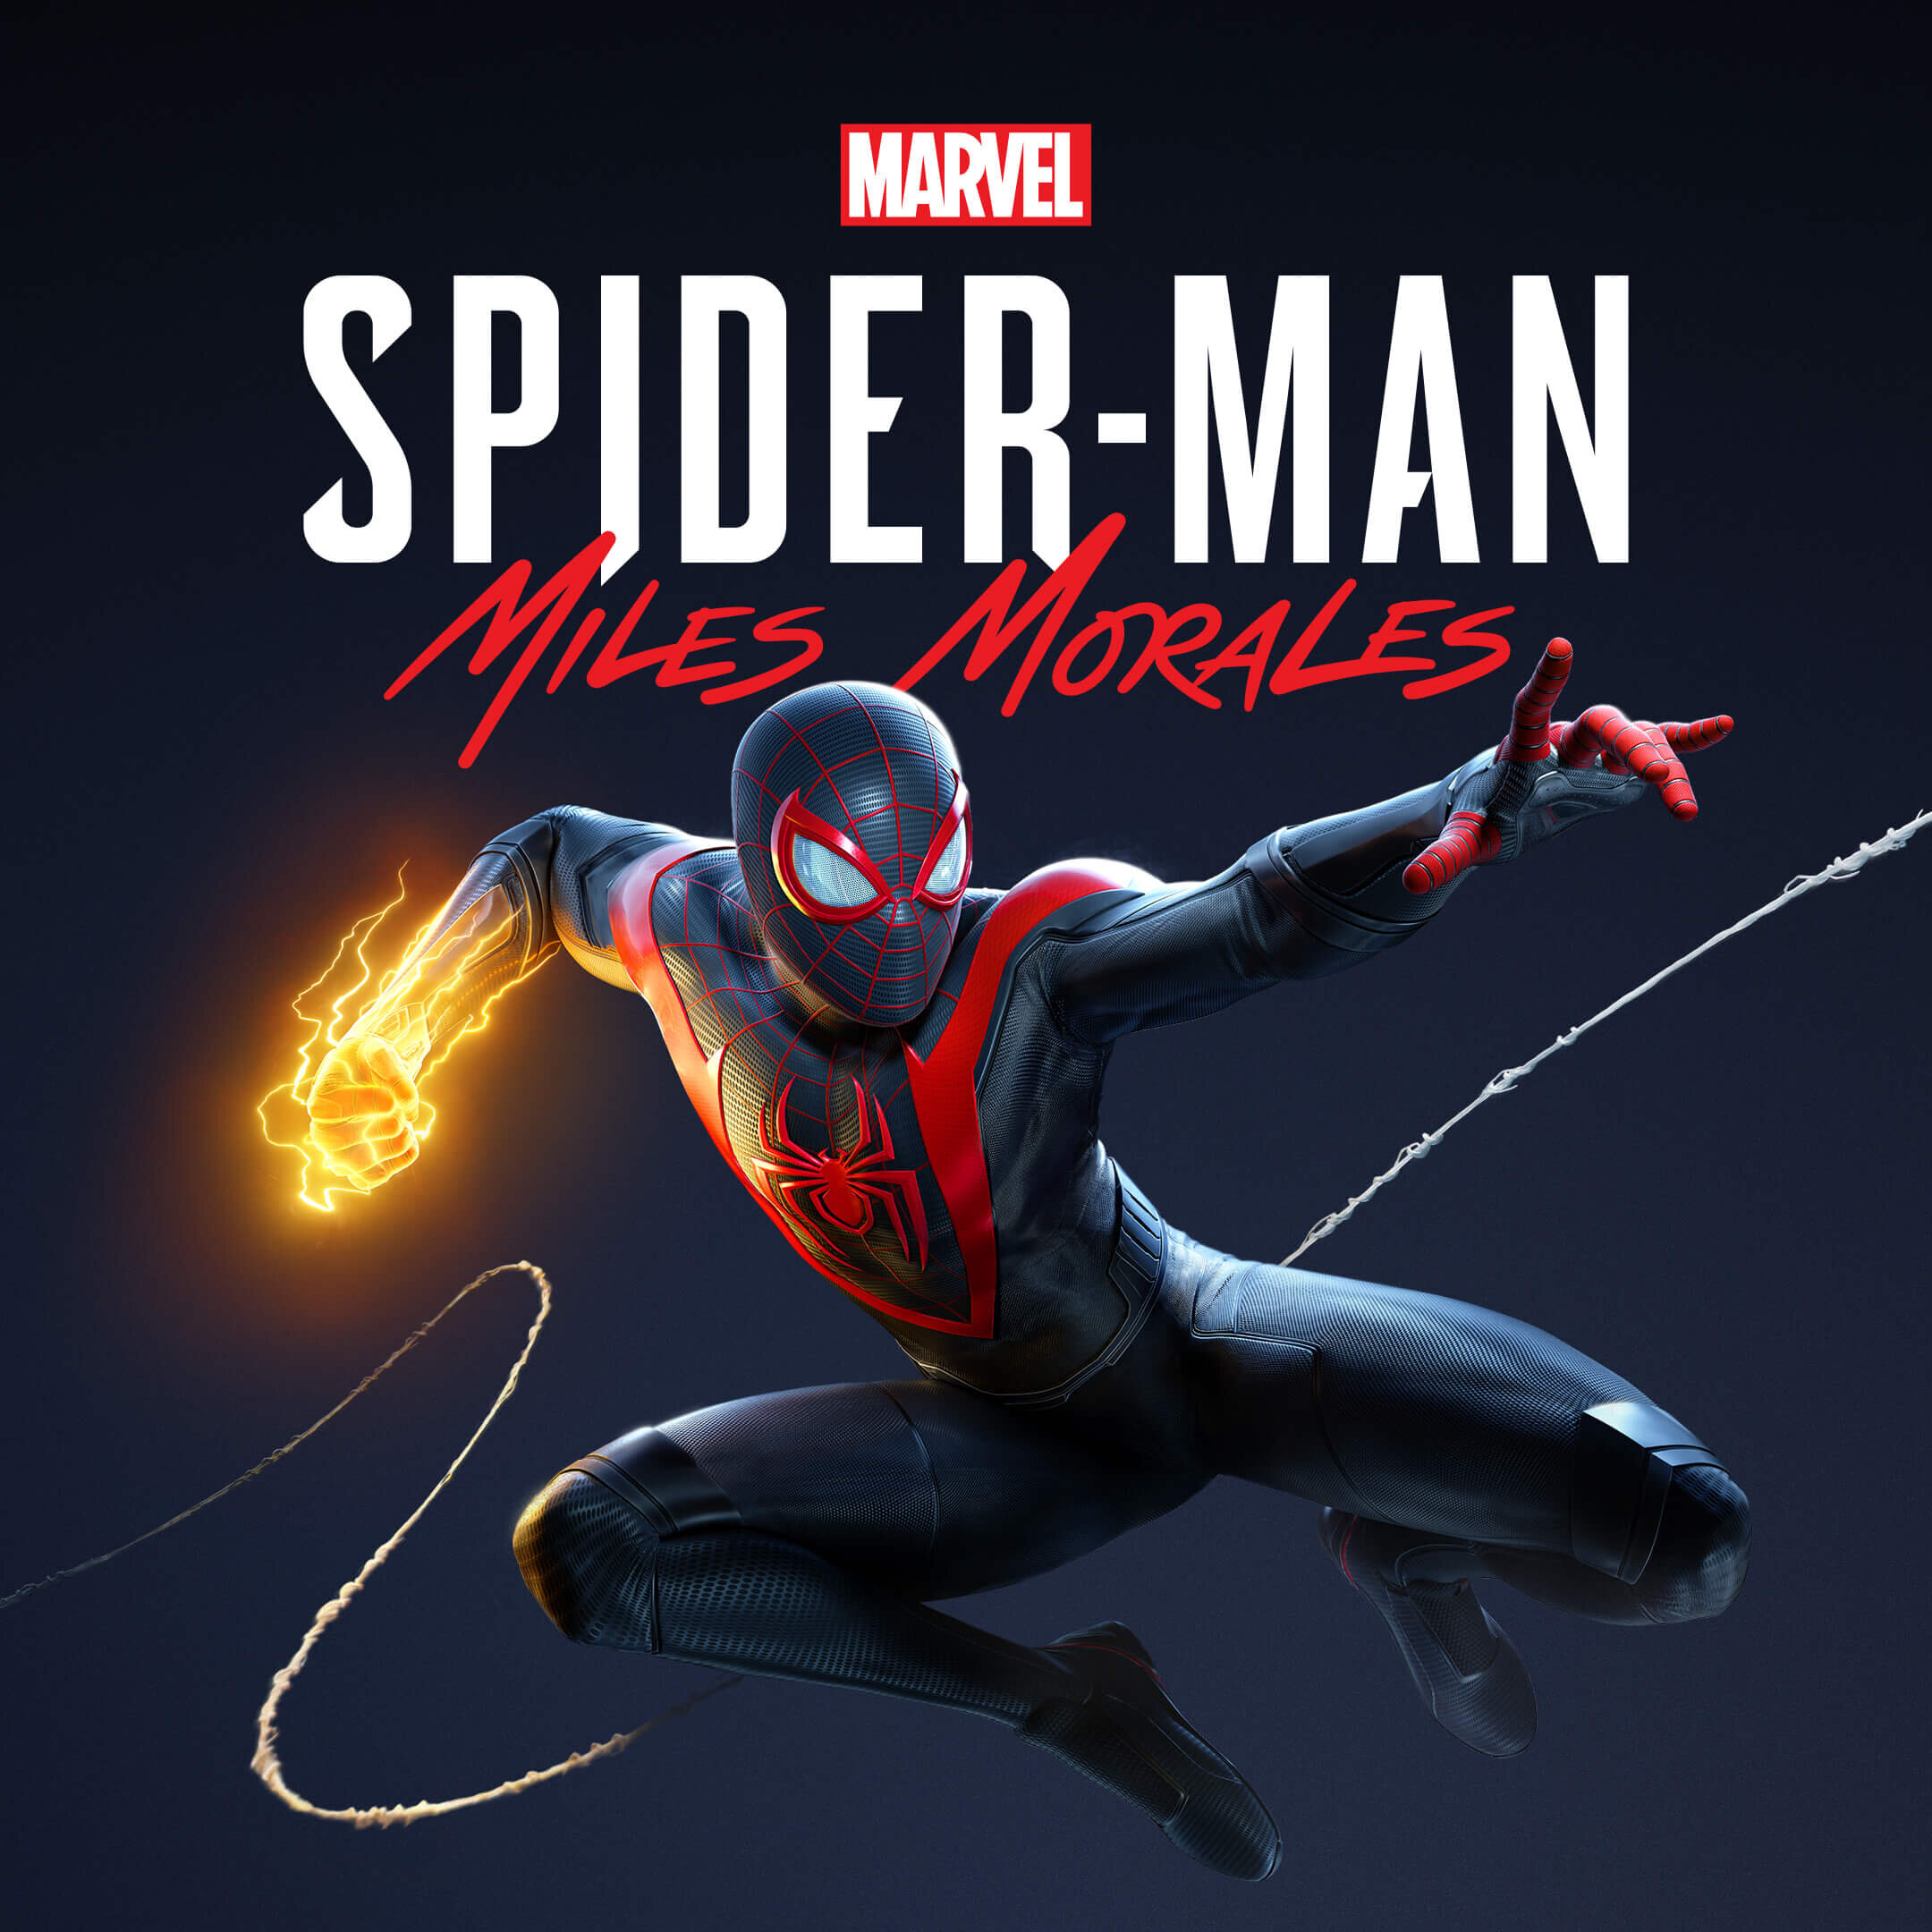 MarvelsSpiderManMilesMorales_1x1.jpg